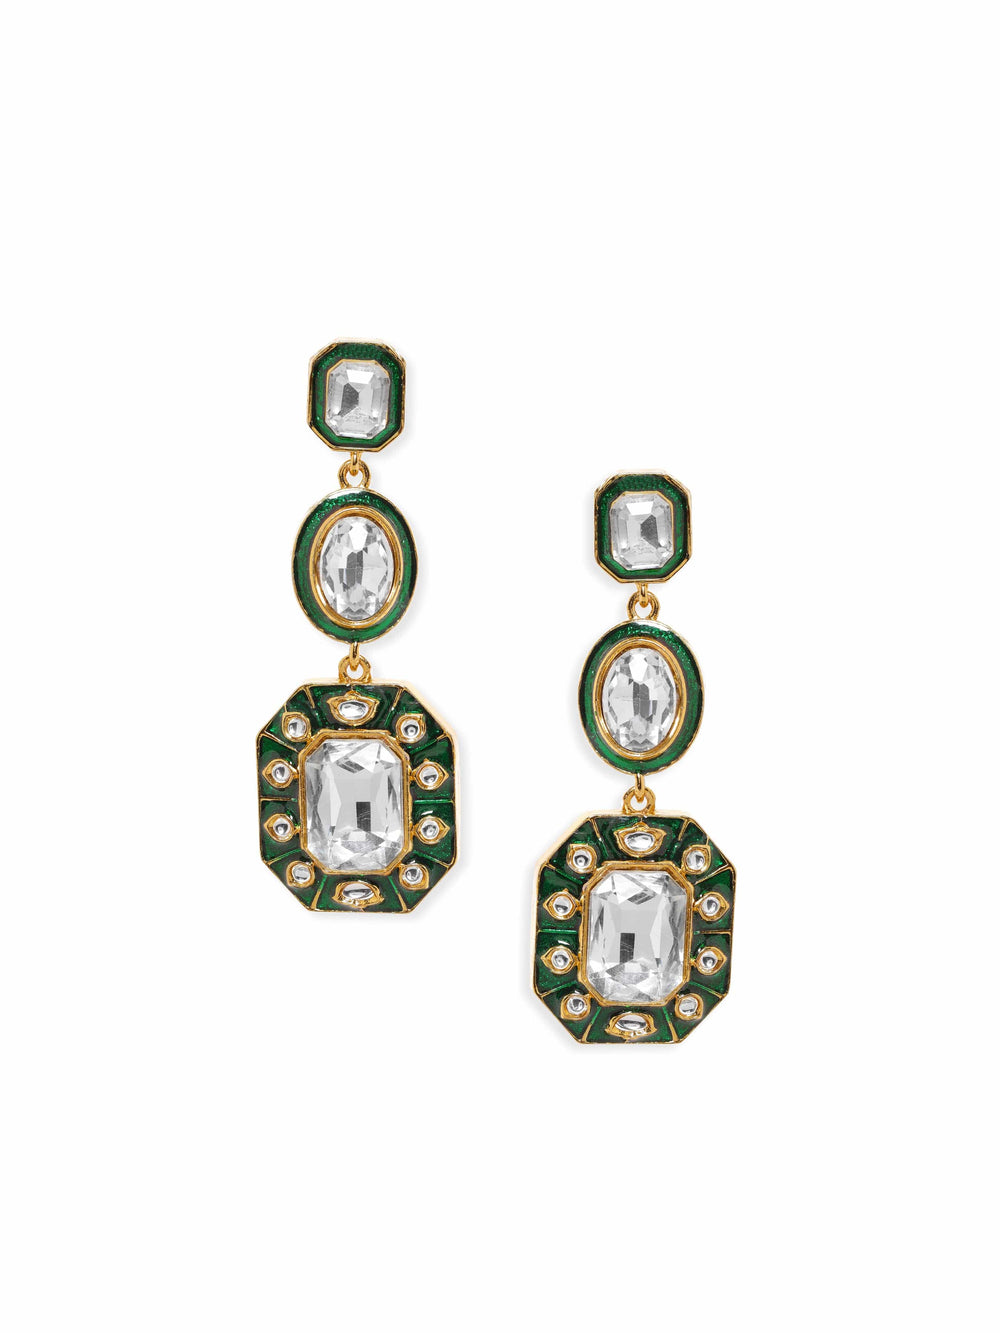 Rubans 22K Antique Gold plated Kundan Studded Green Enamel Statement Dangle Earring Earrings